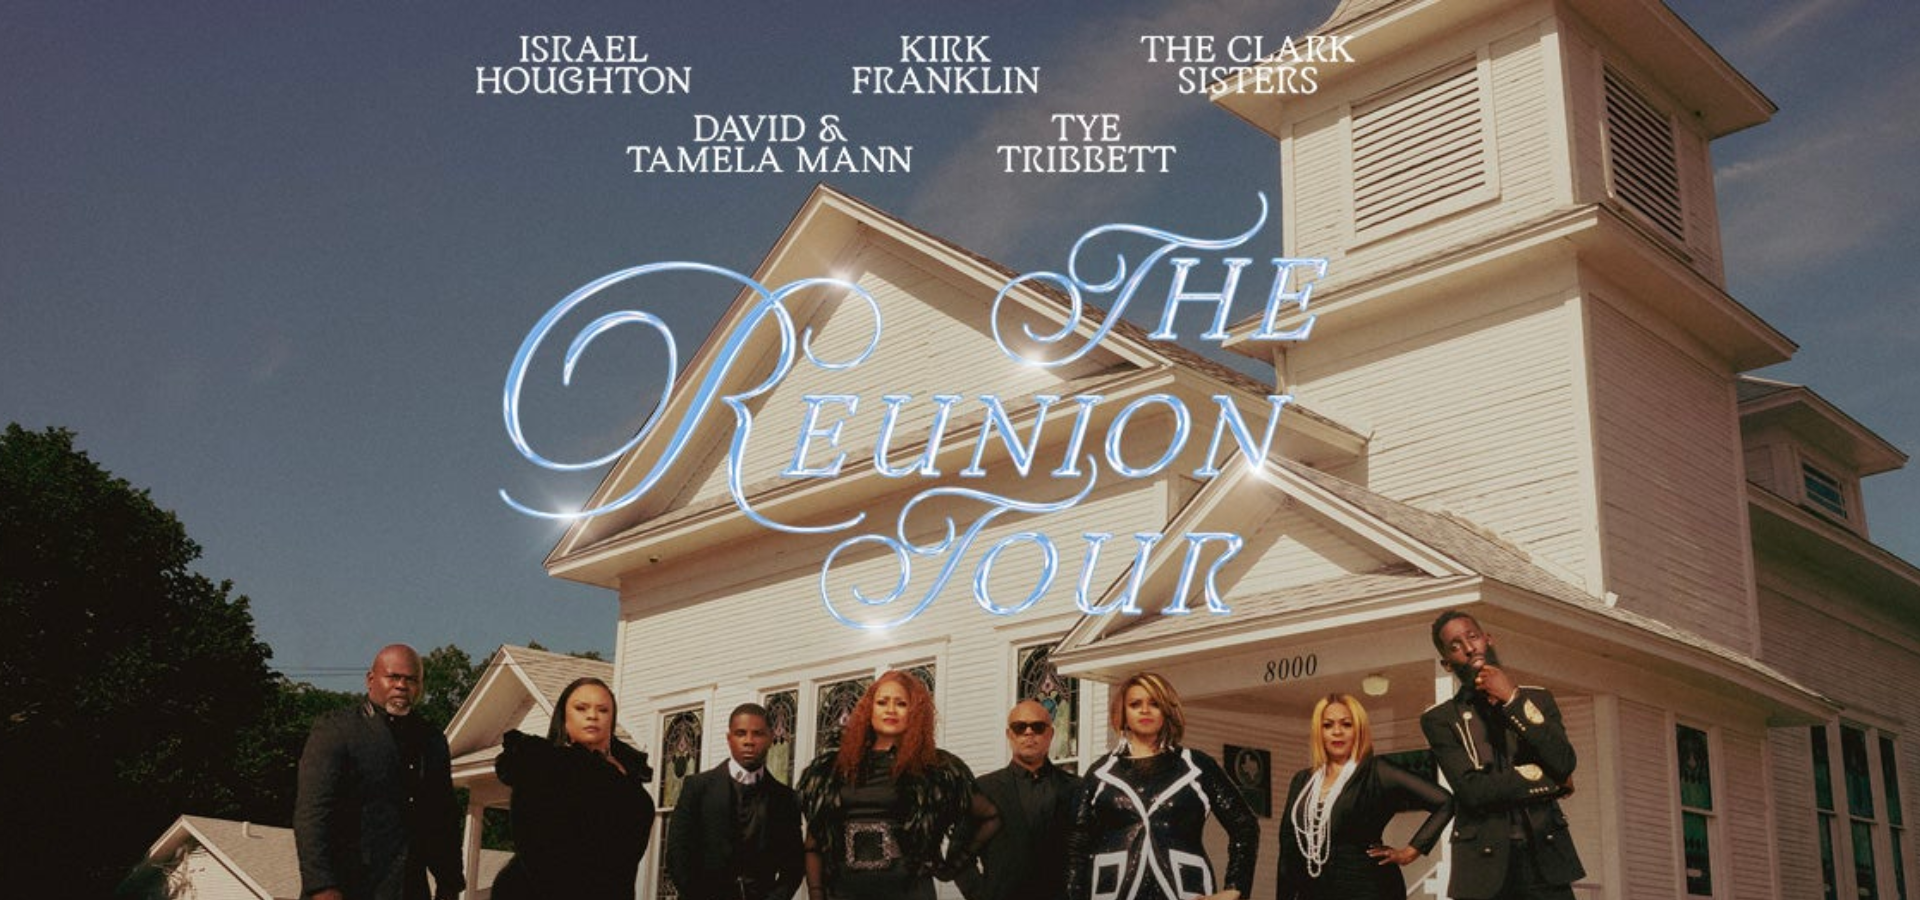 Kirk Franklin Announces Reunion Tour